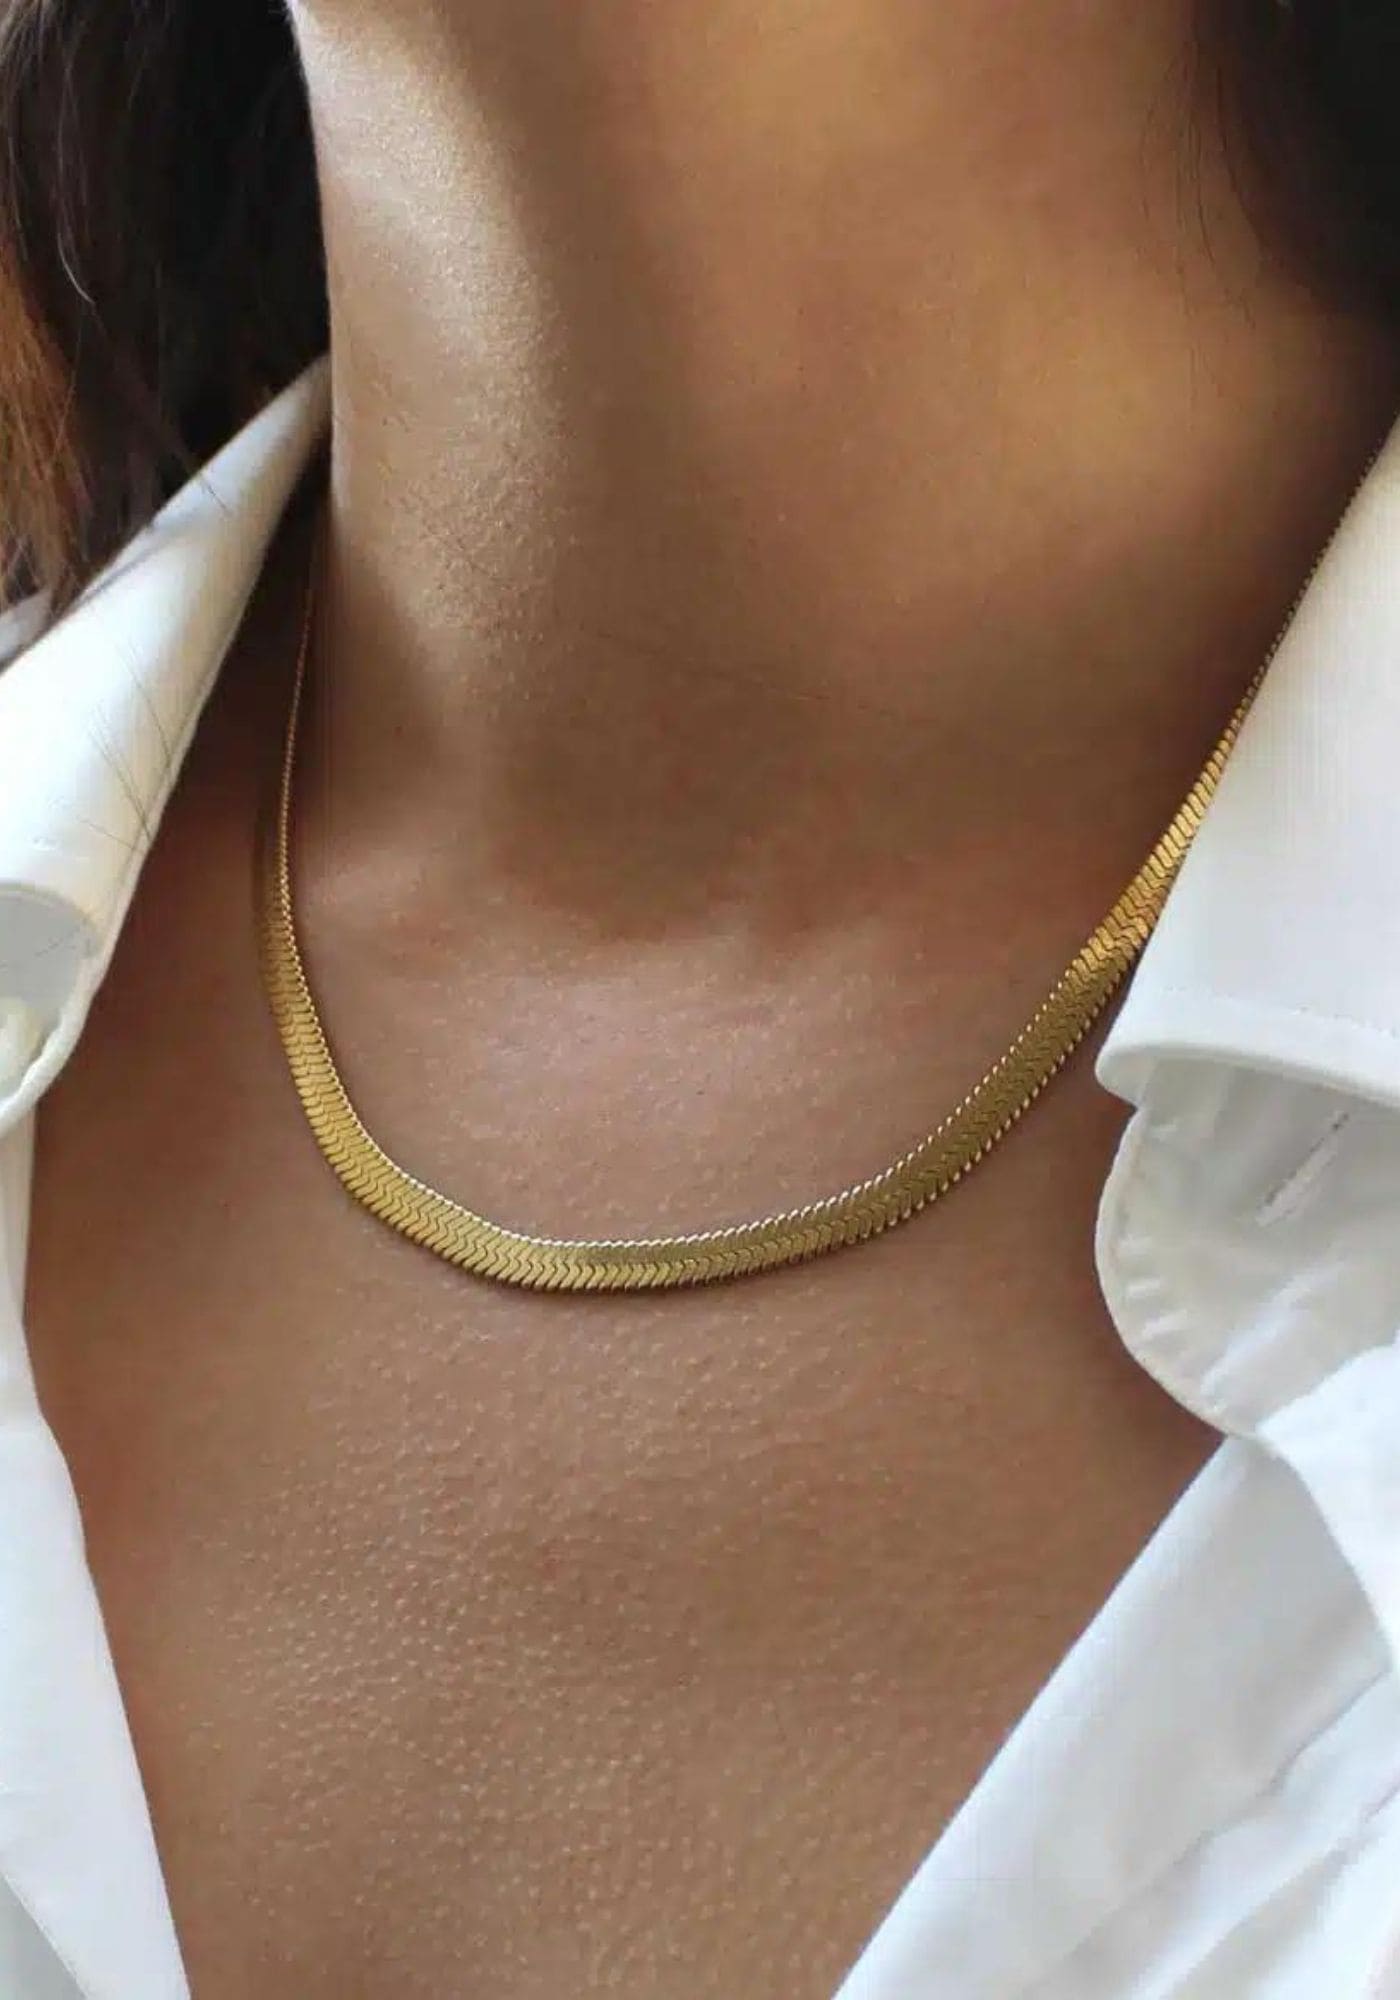 La femme porte le collier Leto or de chez Caprice Paris